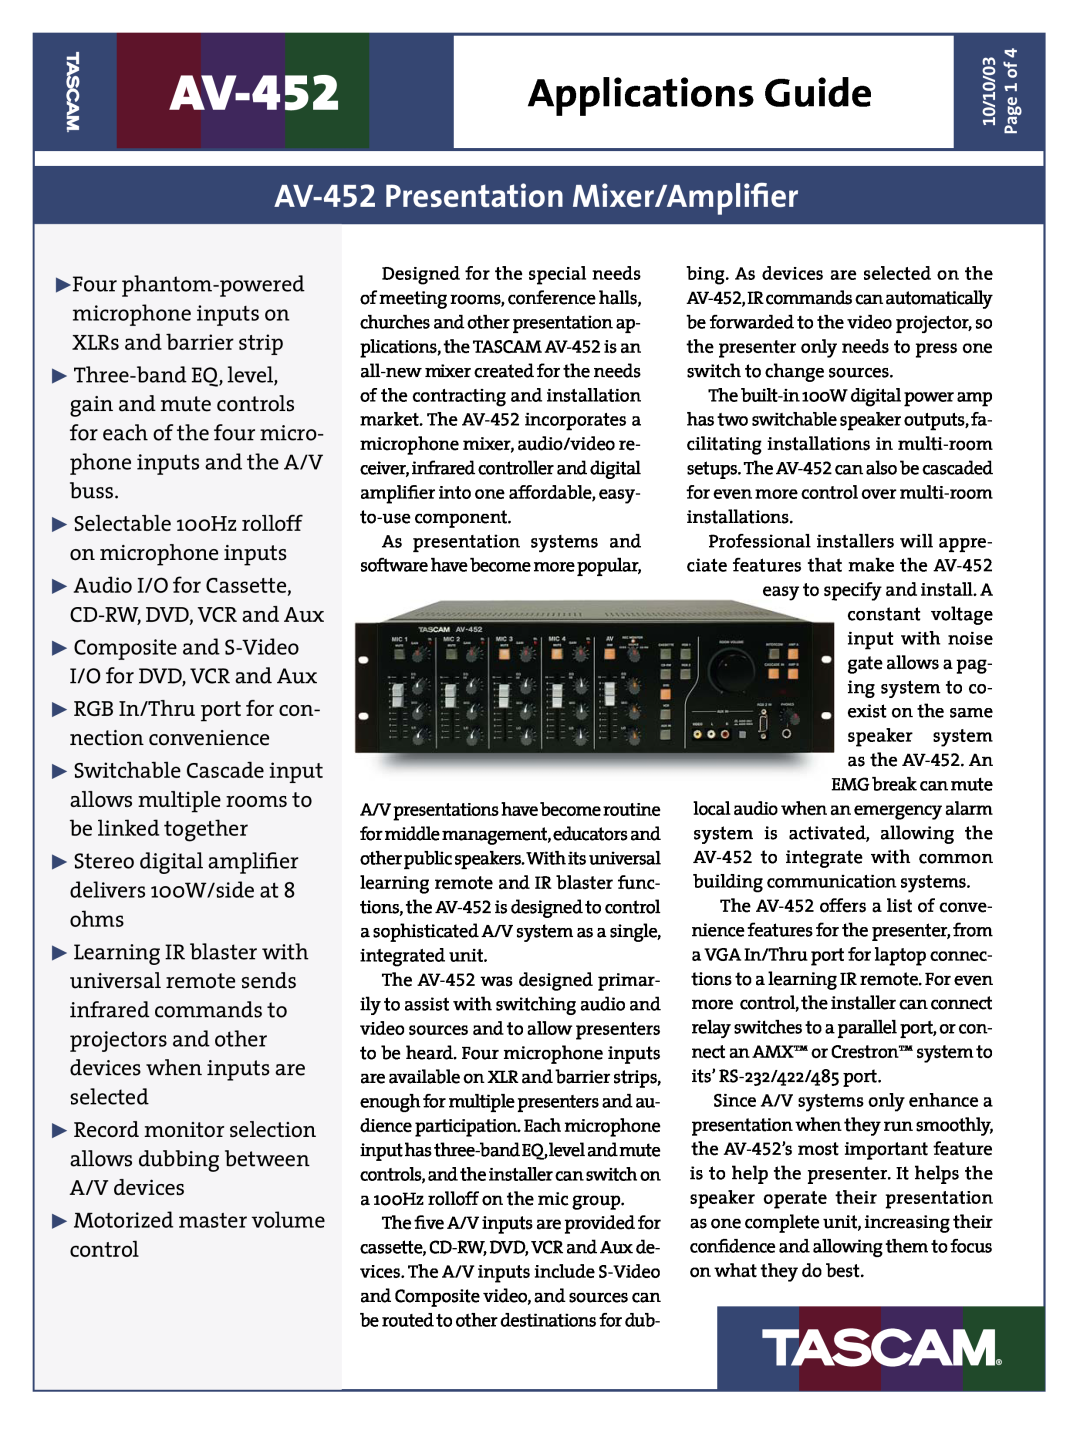 Tascam manual Applications Guide, AV-452Presentation Mixer/Ampliﬁer 